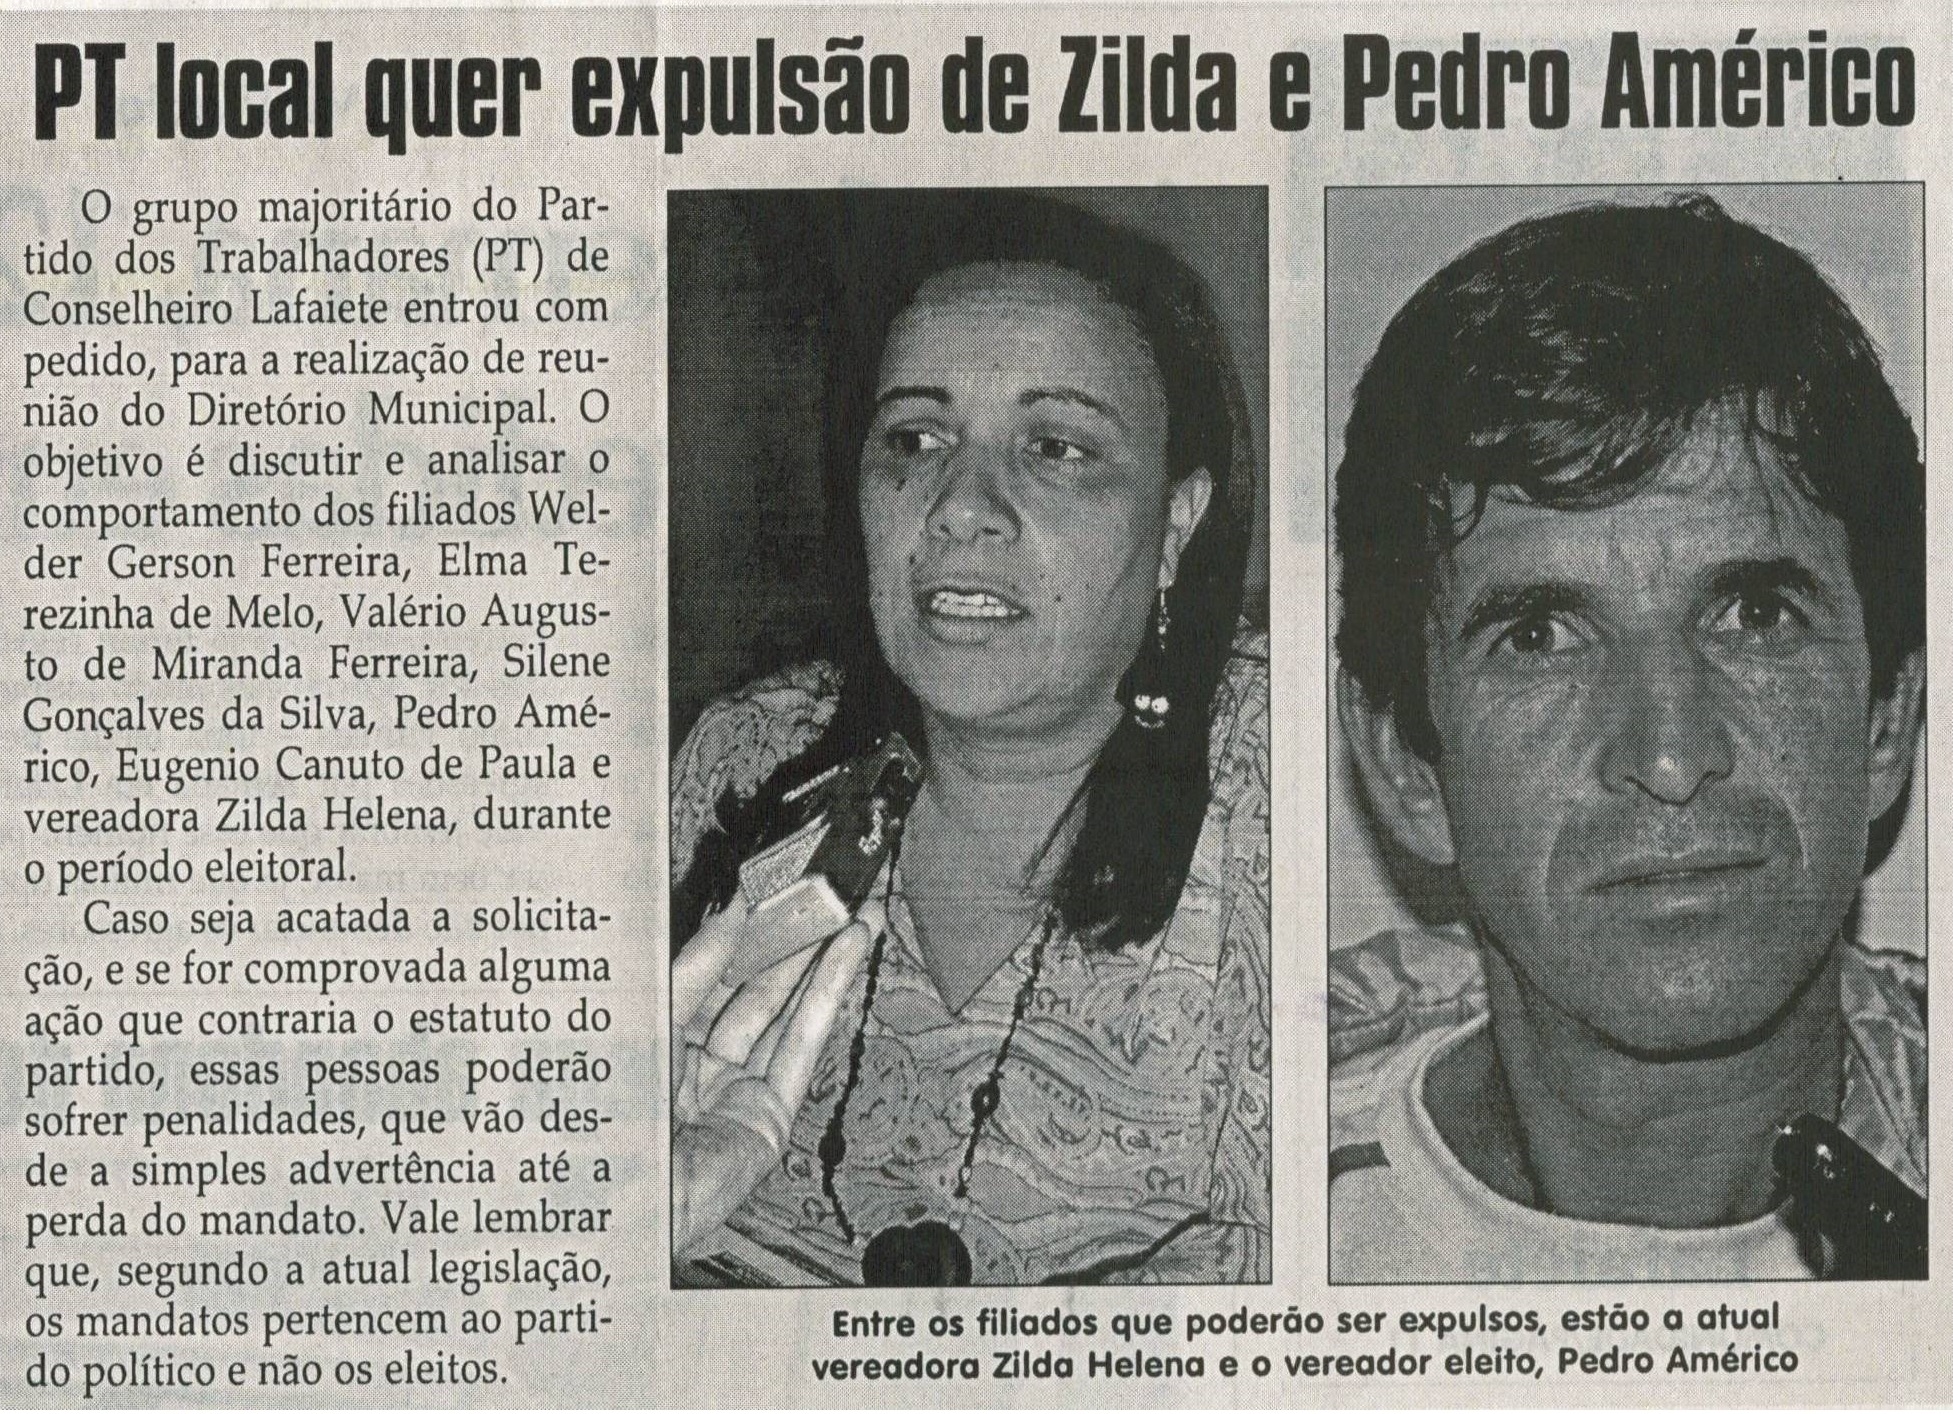 PT local quer expulsão de Zilda e Pedro Américo. Jornal Correio da Cidade,  Conselheiro Lafaiete, 25 out. 2008, p. 02.